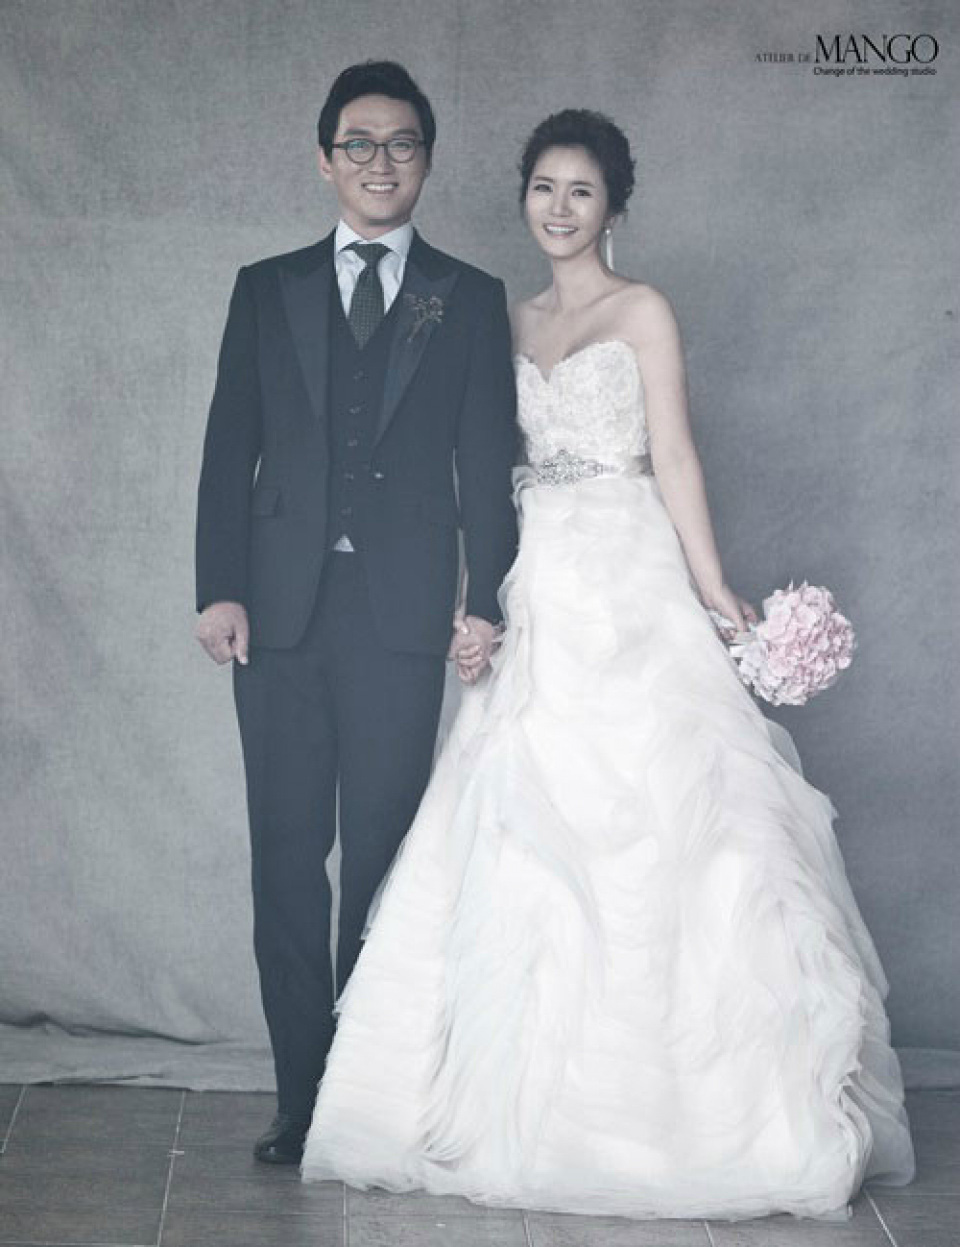 9 cặp đôi Kbiz từ friendzone mà thành: Jeon Ji Hyun và chồng CEO là thanh mai trúc mã, ca sĩ Hậu duệ mặt trời có cái kết đẹp - Ảnh 13.